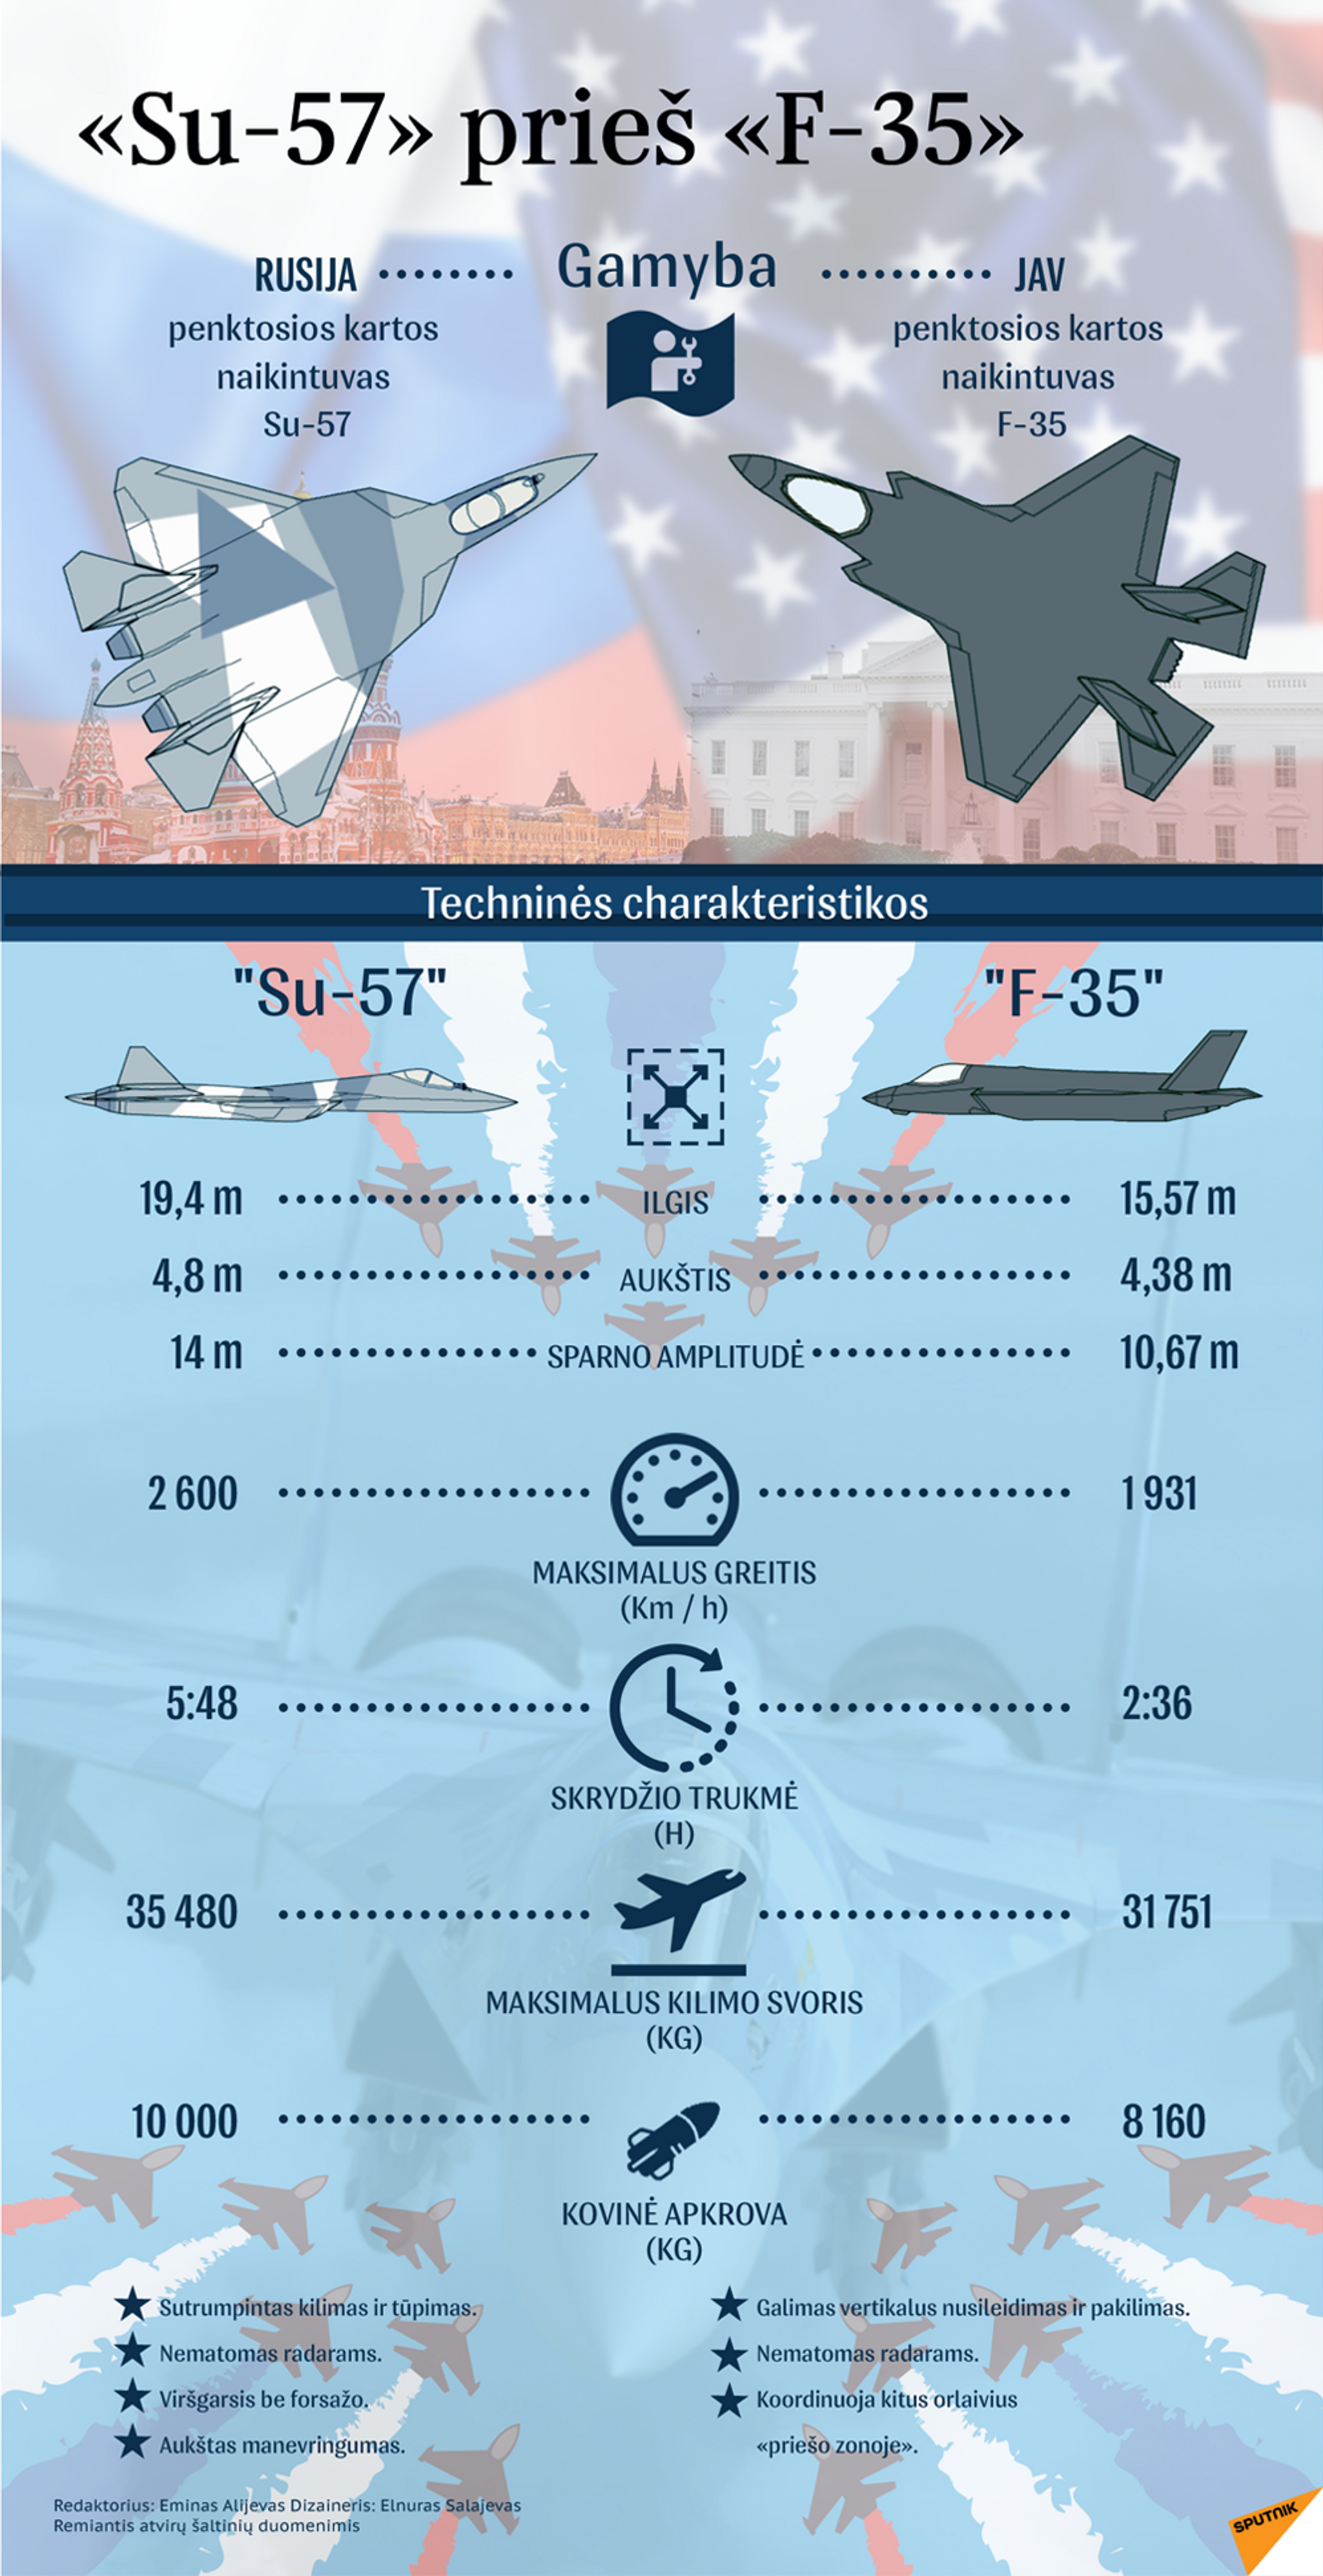 Penktosios kartos naikintuvas Su-57 vs F-35 - Sputnik Lietuva, 1920, 12.05.2021